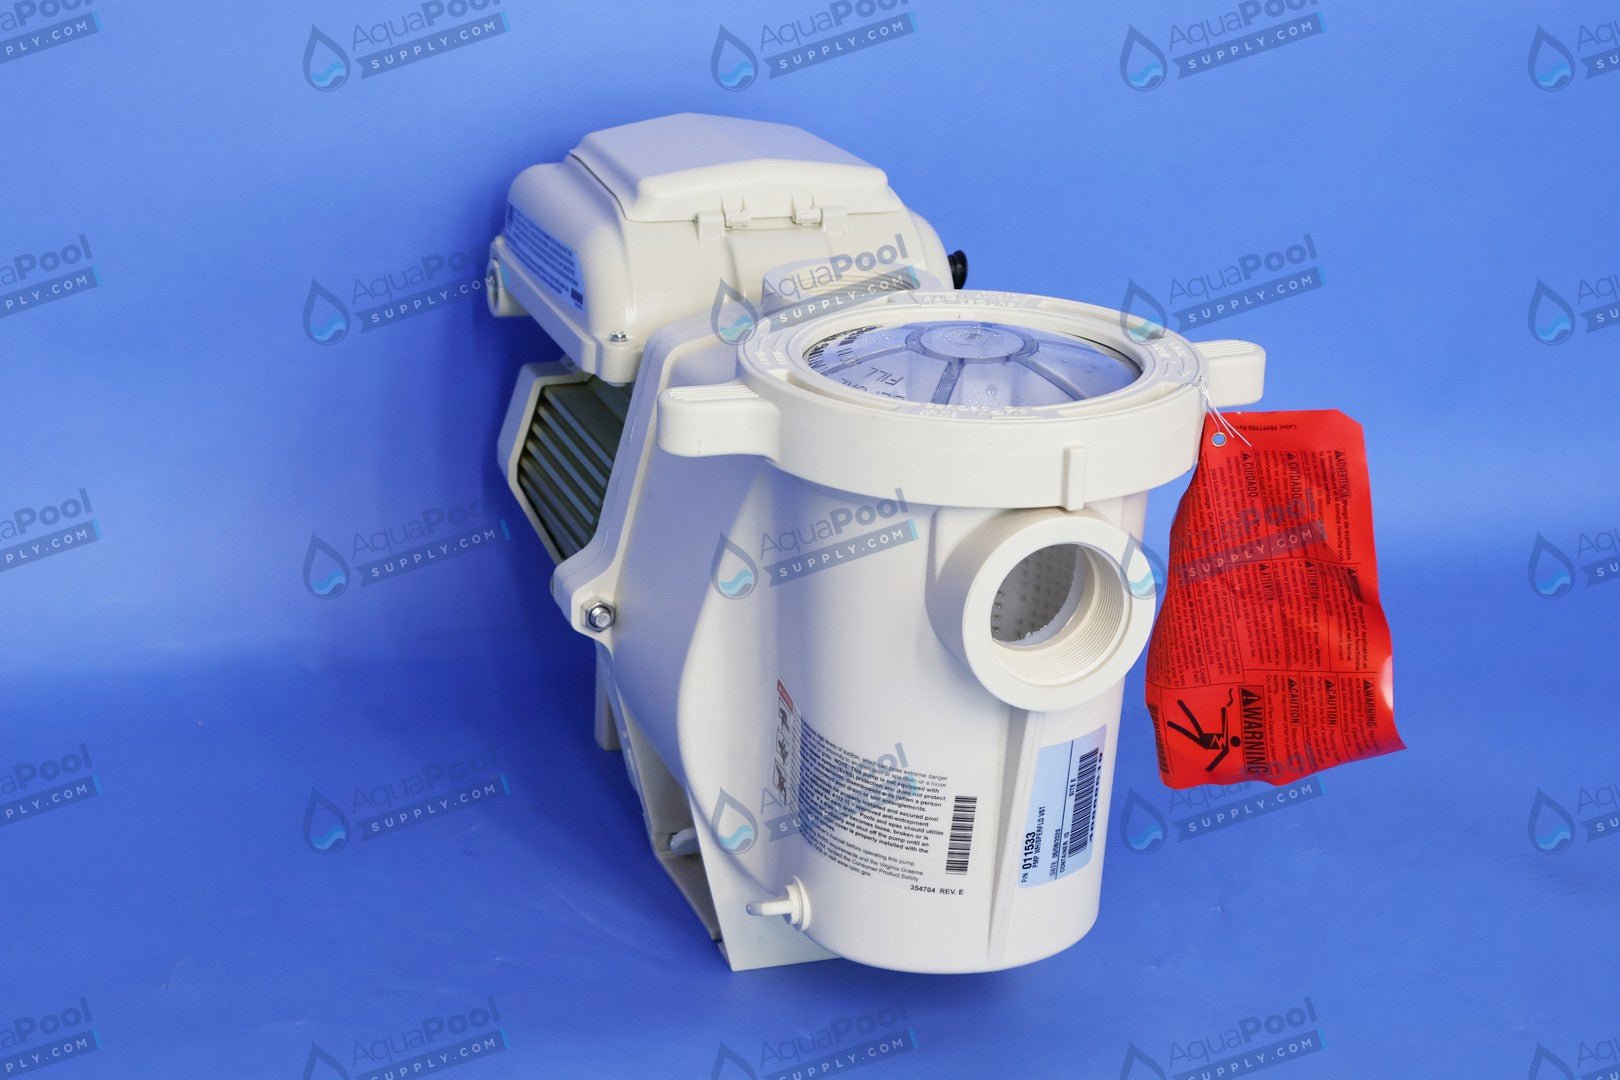 Pentair WhisperFlo® VST Variable Speed Pump EC-011533 - Variable Speed Pumps